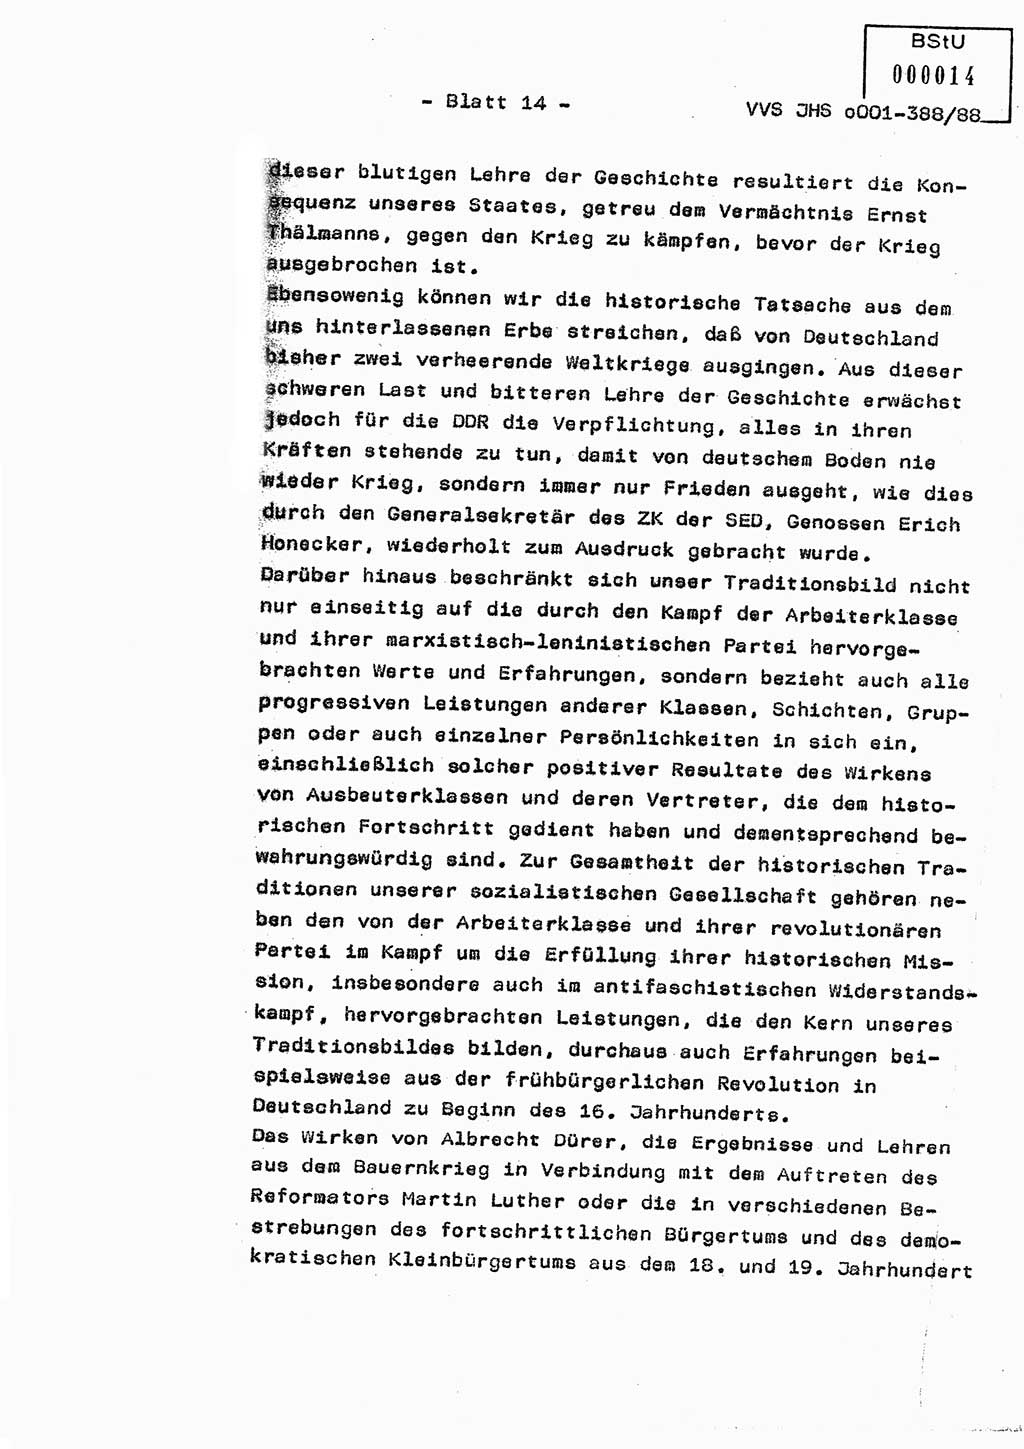 Diplomarbeit Hauptmann Heinz Brixel (Abt. ⅩⅣ), Ministerium für Staatssicherheit (MfS) [Deutsche Demokratische Republik (DDR)], Juristische Hochschule (JHS), Vertrauliche Verschlußsache (VVS) o001-388/88, Potsdam 1988, Blatt 14 (Dipl.-Arb. MfS DDR JHS VVS o001-388/88 1988, Bl. 14)